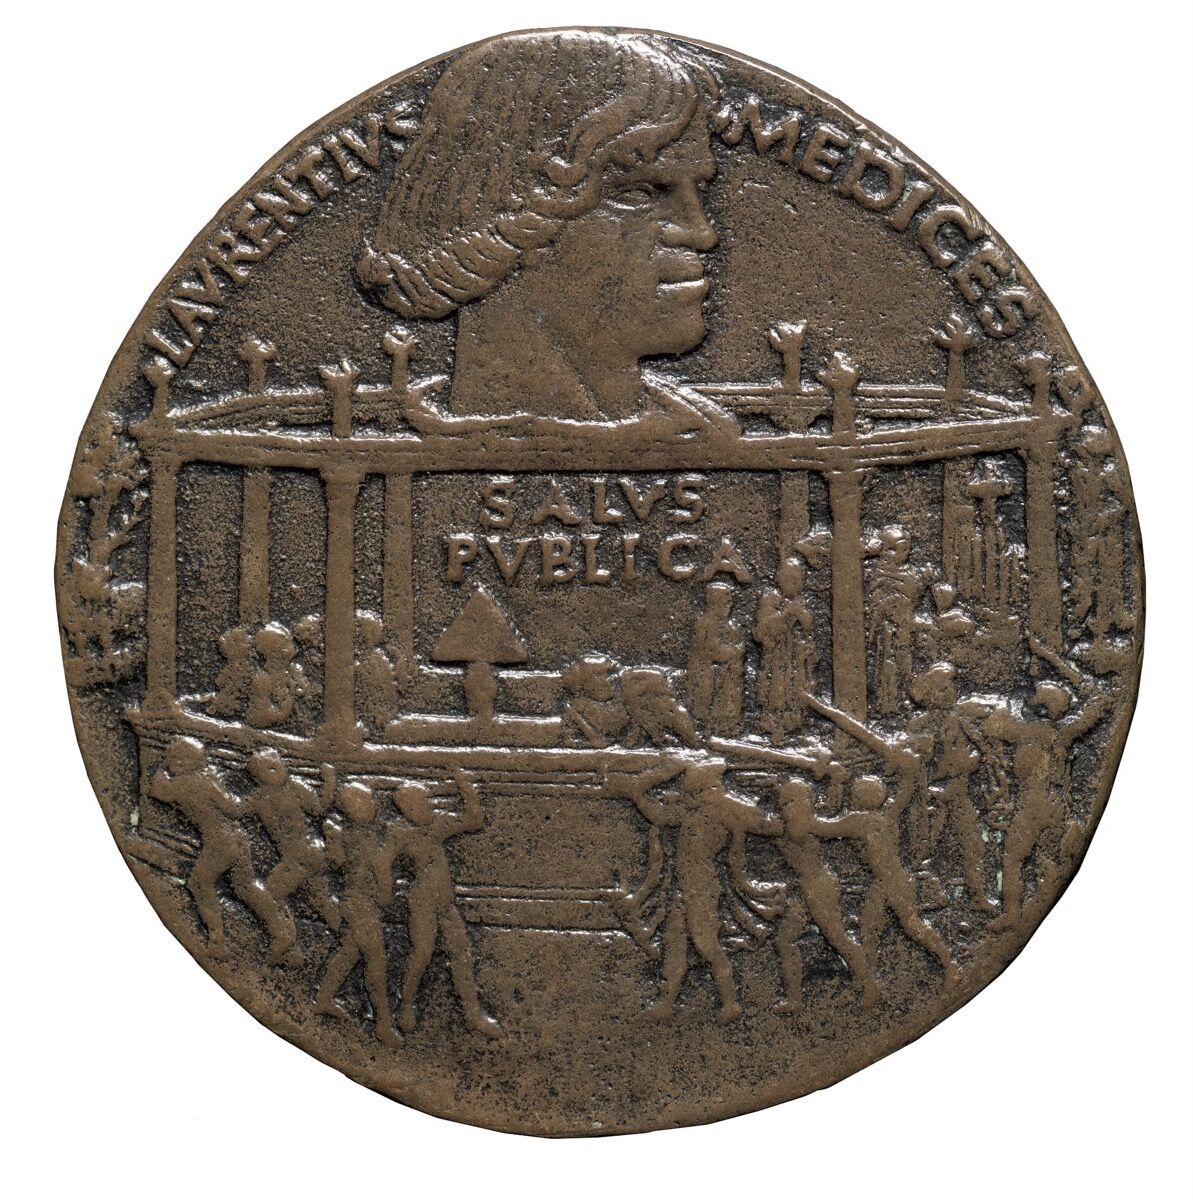 Bertoldo di Giovanni, medal commemorating The Pazzi Conspiracy (Lorenzo de&#x27; Medici), 1478. Photo by Mauro Magliani. Courtesy of the Frick Collection, New York.